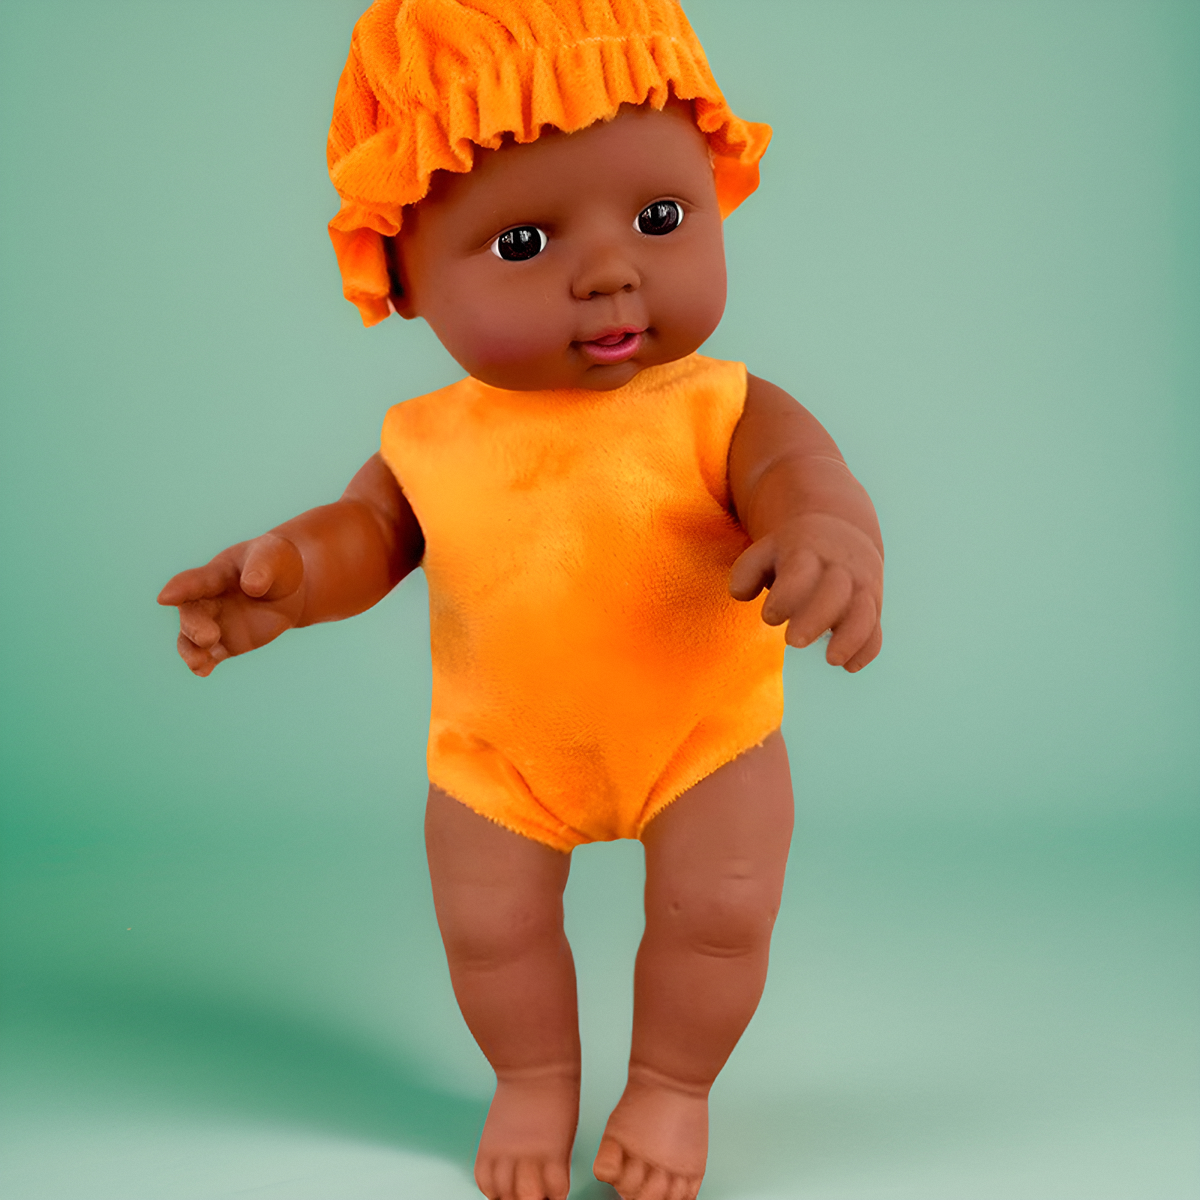 28厘米非洲黑人宝宝软胶公仔仿真娃娃儿童玩具洋娃娃玩偶包邮